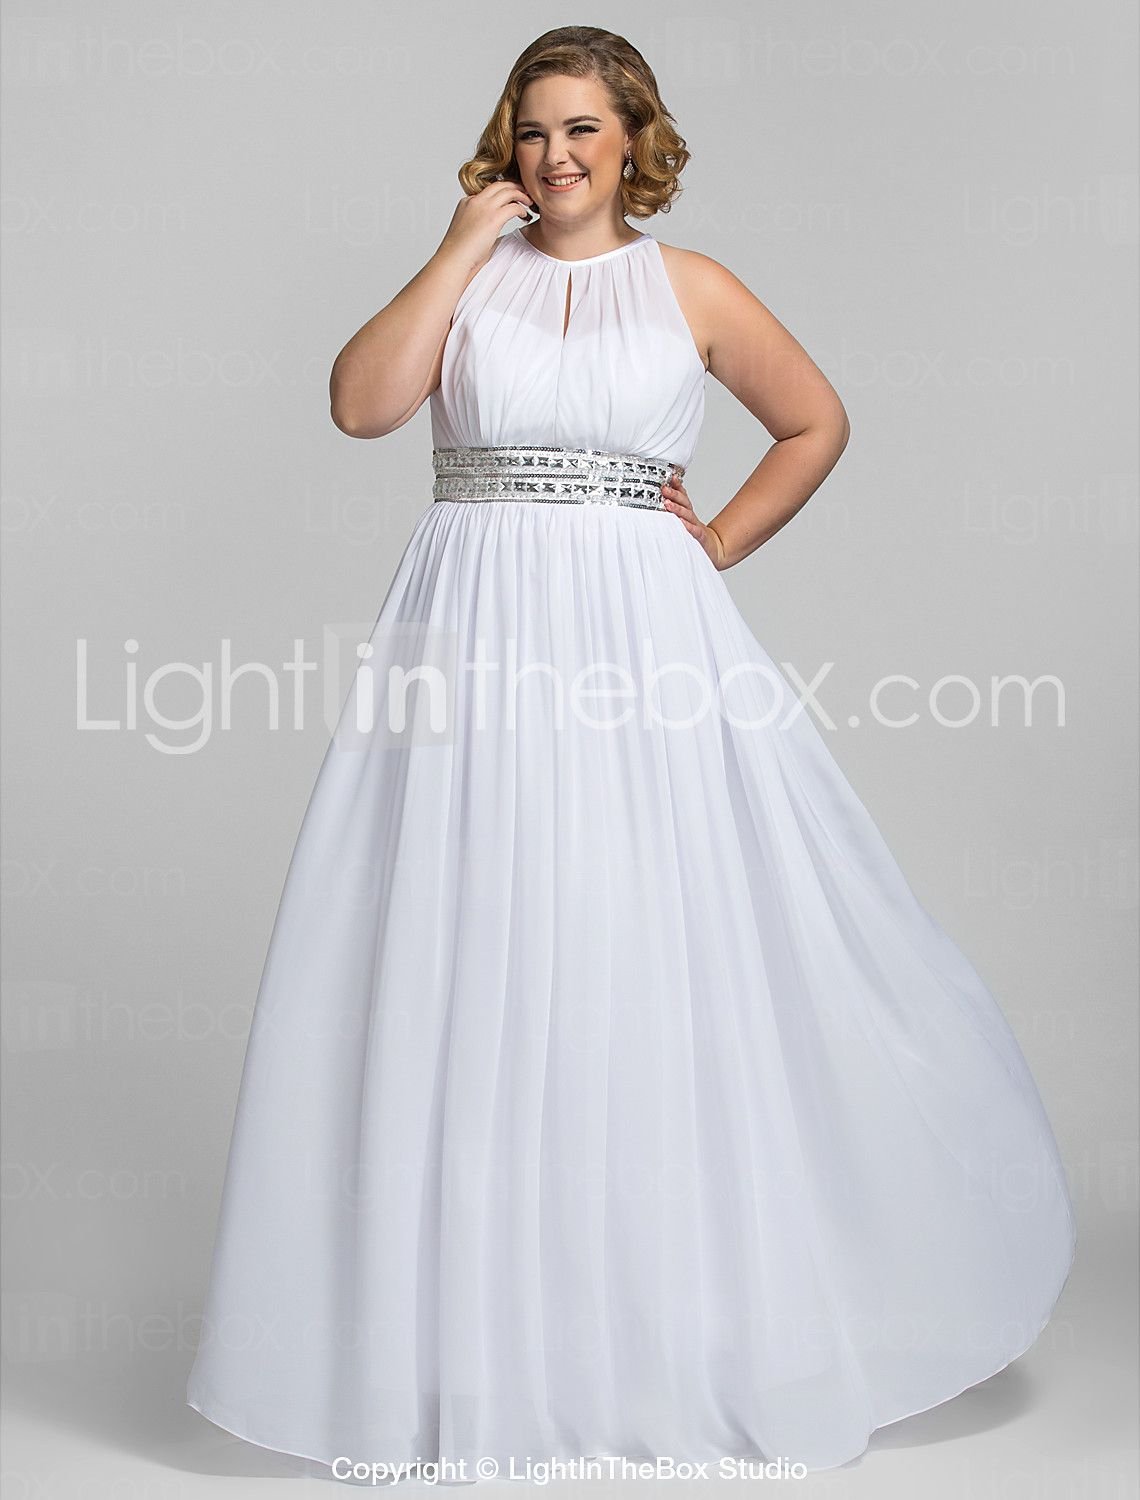 Белые платья больших размеров. Белое вечернее платье для полных. Вечерние платья для полных девушек на свадьбу. Вечернее платье белое длинное для полных. Белое вечернее платье для полных женщин.